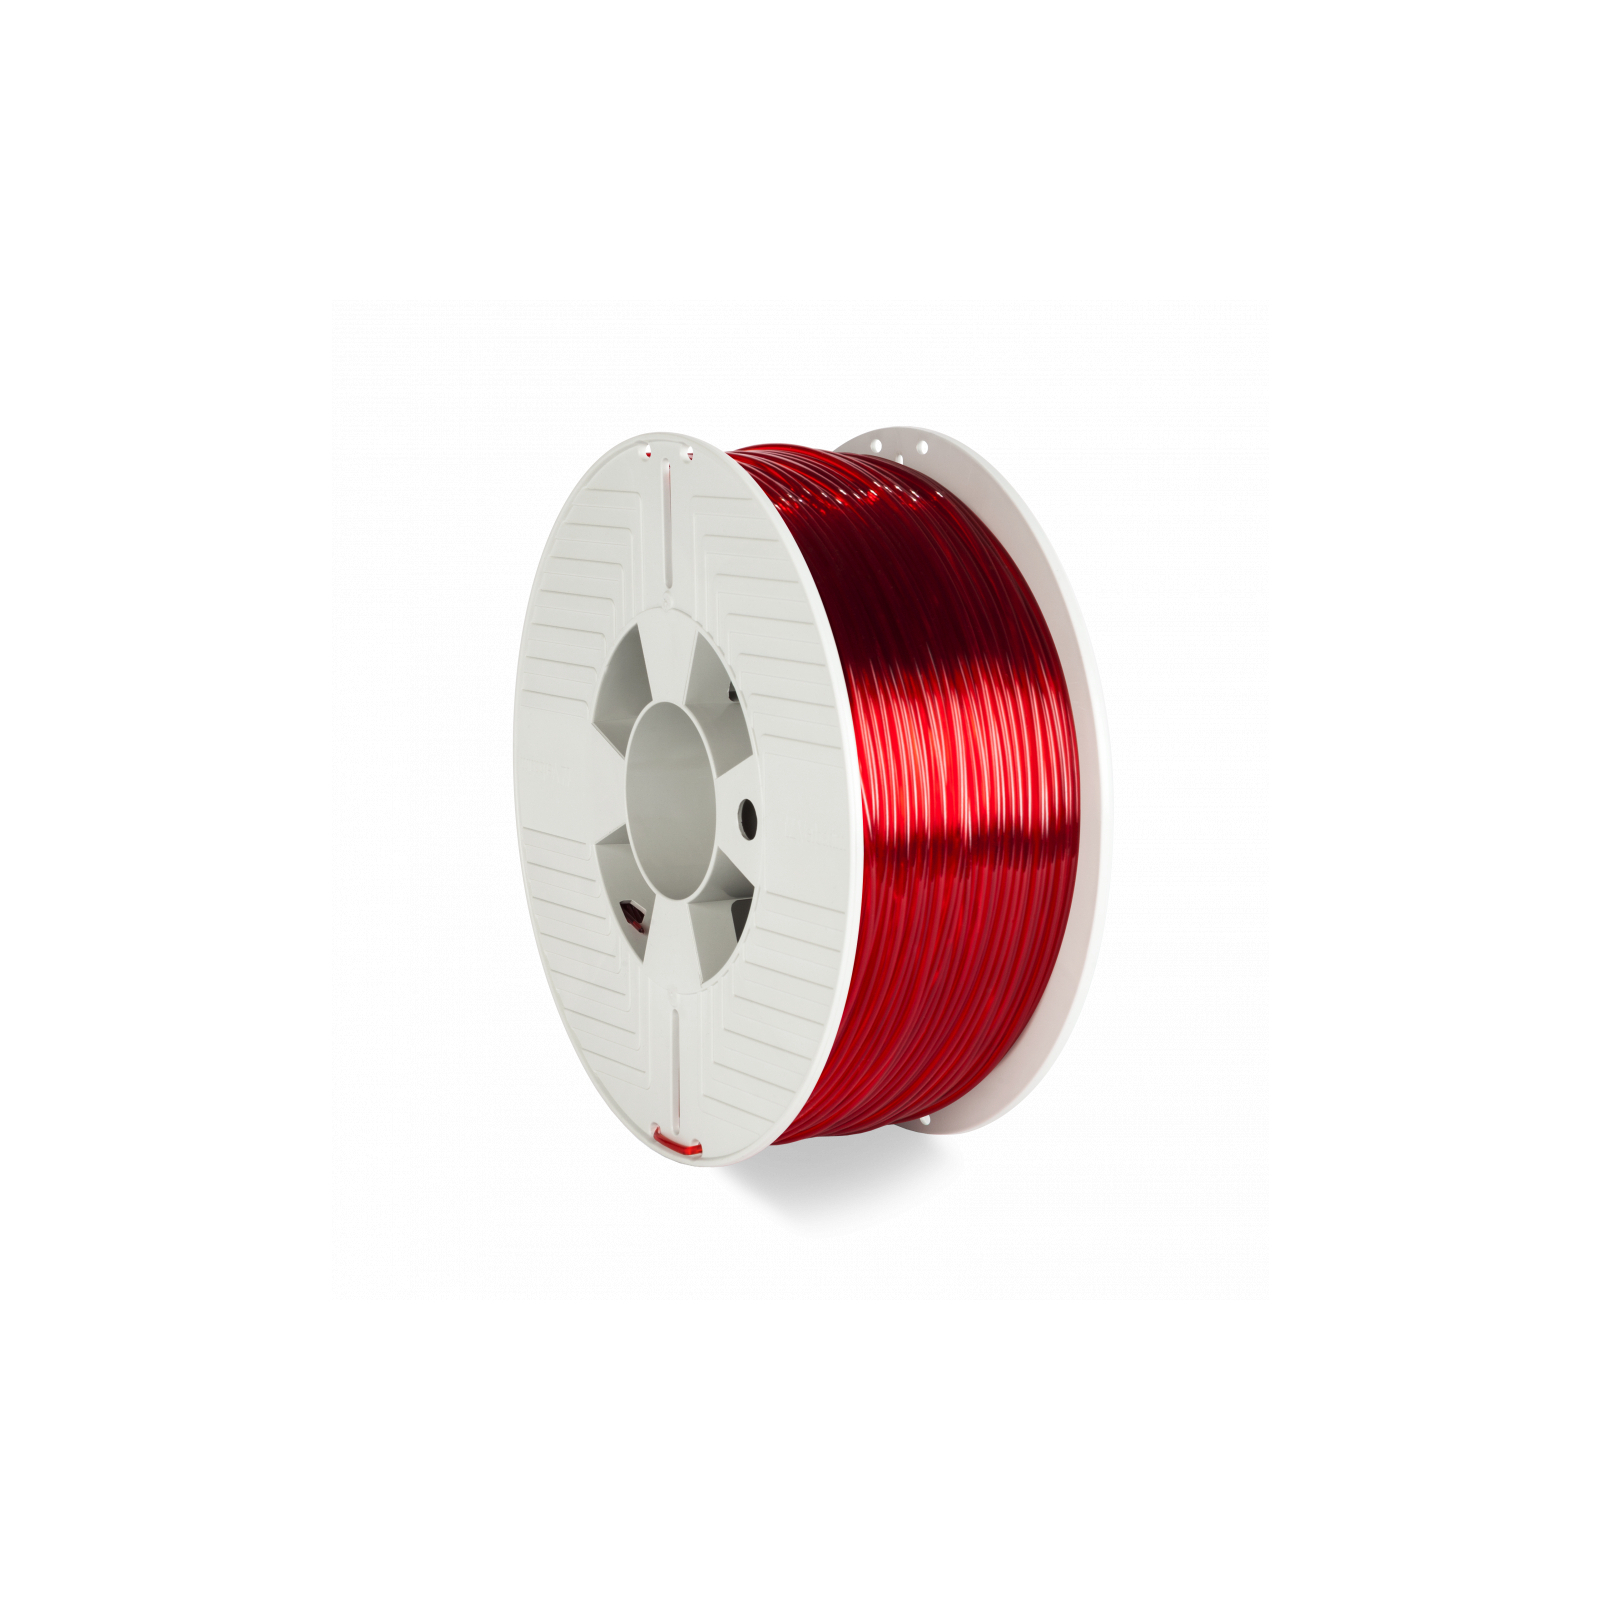 Пластик для 3D-принтера Verbatim PETG, 2,85 мм, 1 кг, red-transparent (55062)